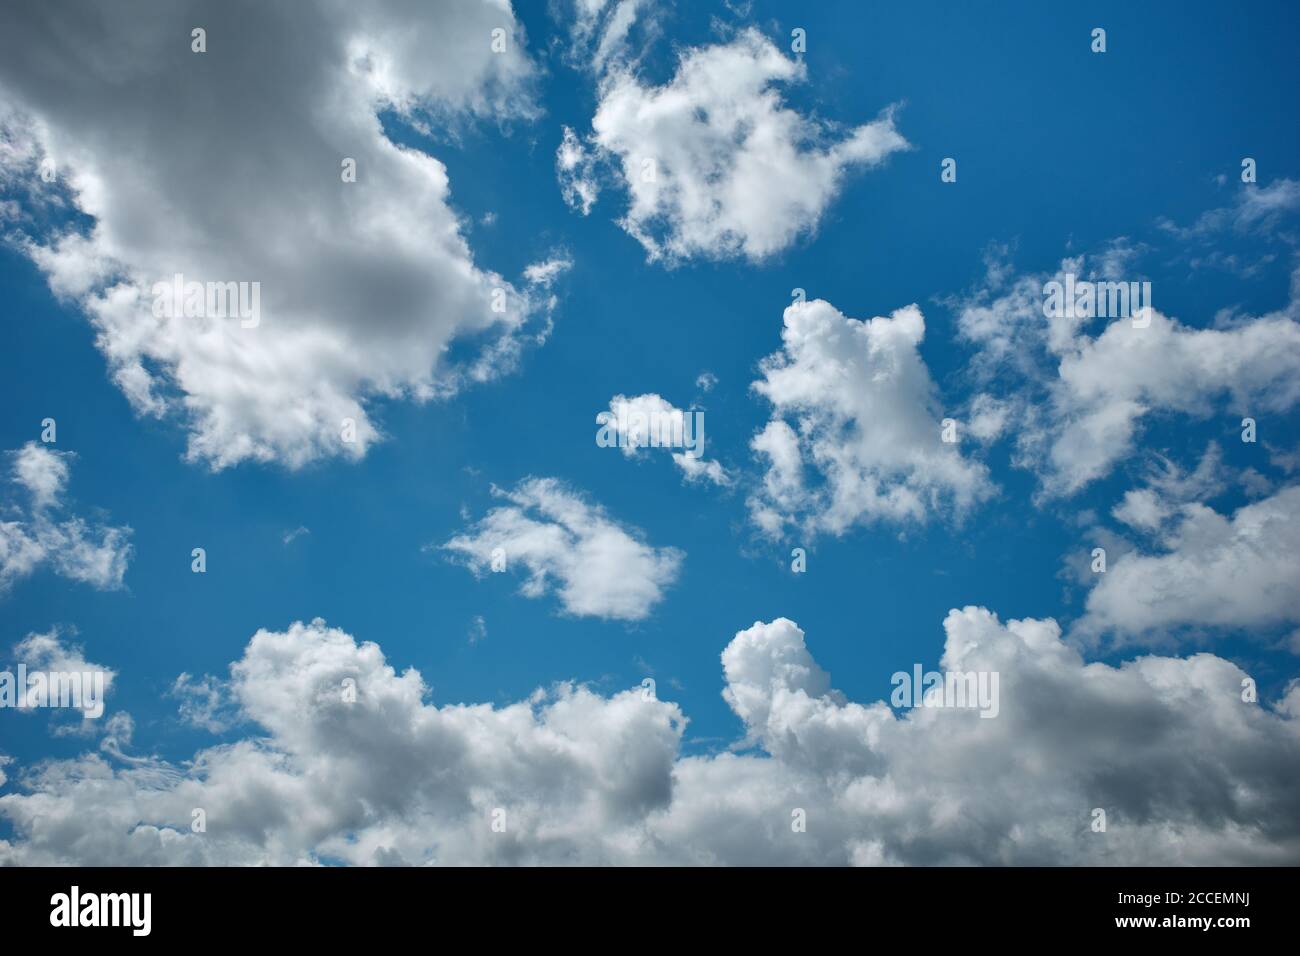 Baumwollartige Cumulus-Wolken im herrlichen azurblauen Himmel. Himmlisches Element. Hintergrund für Vorhersage und Meteorologie Illustration Stockfoto